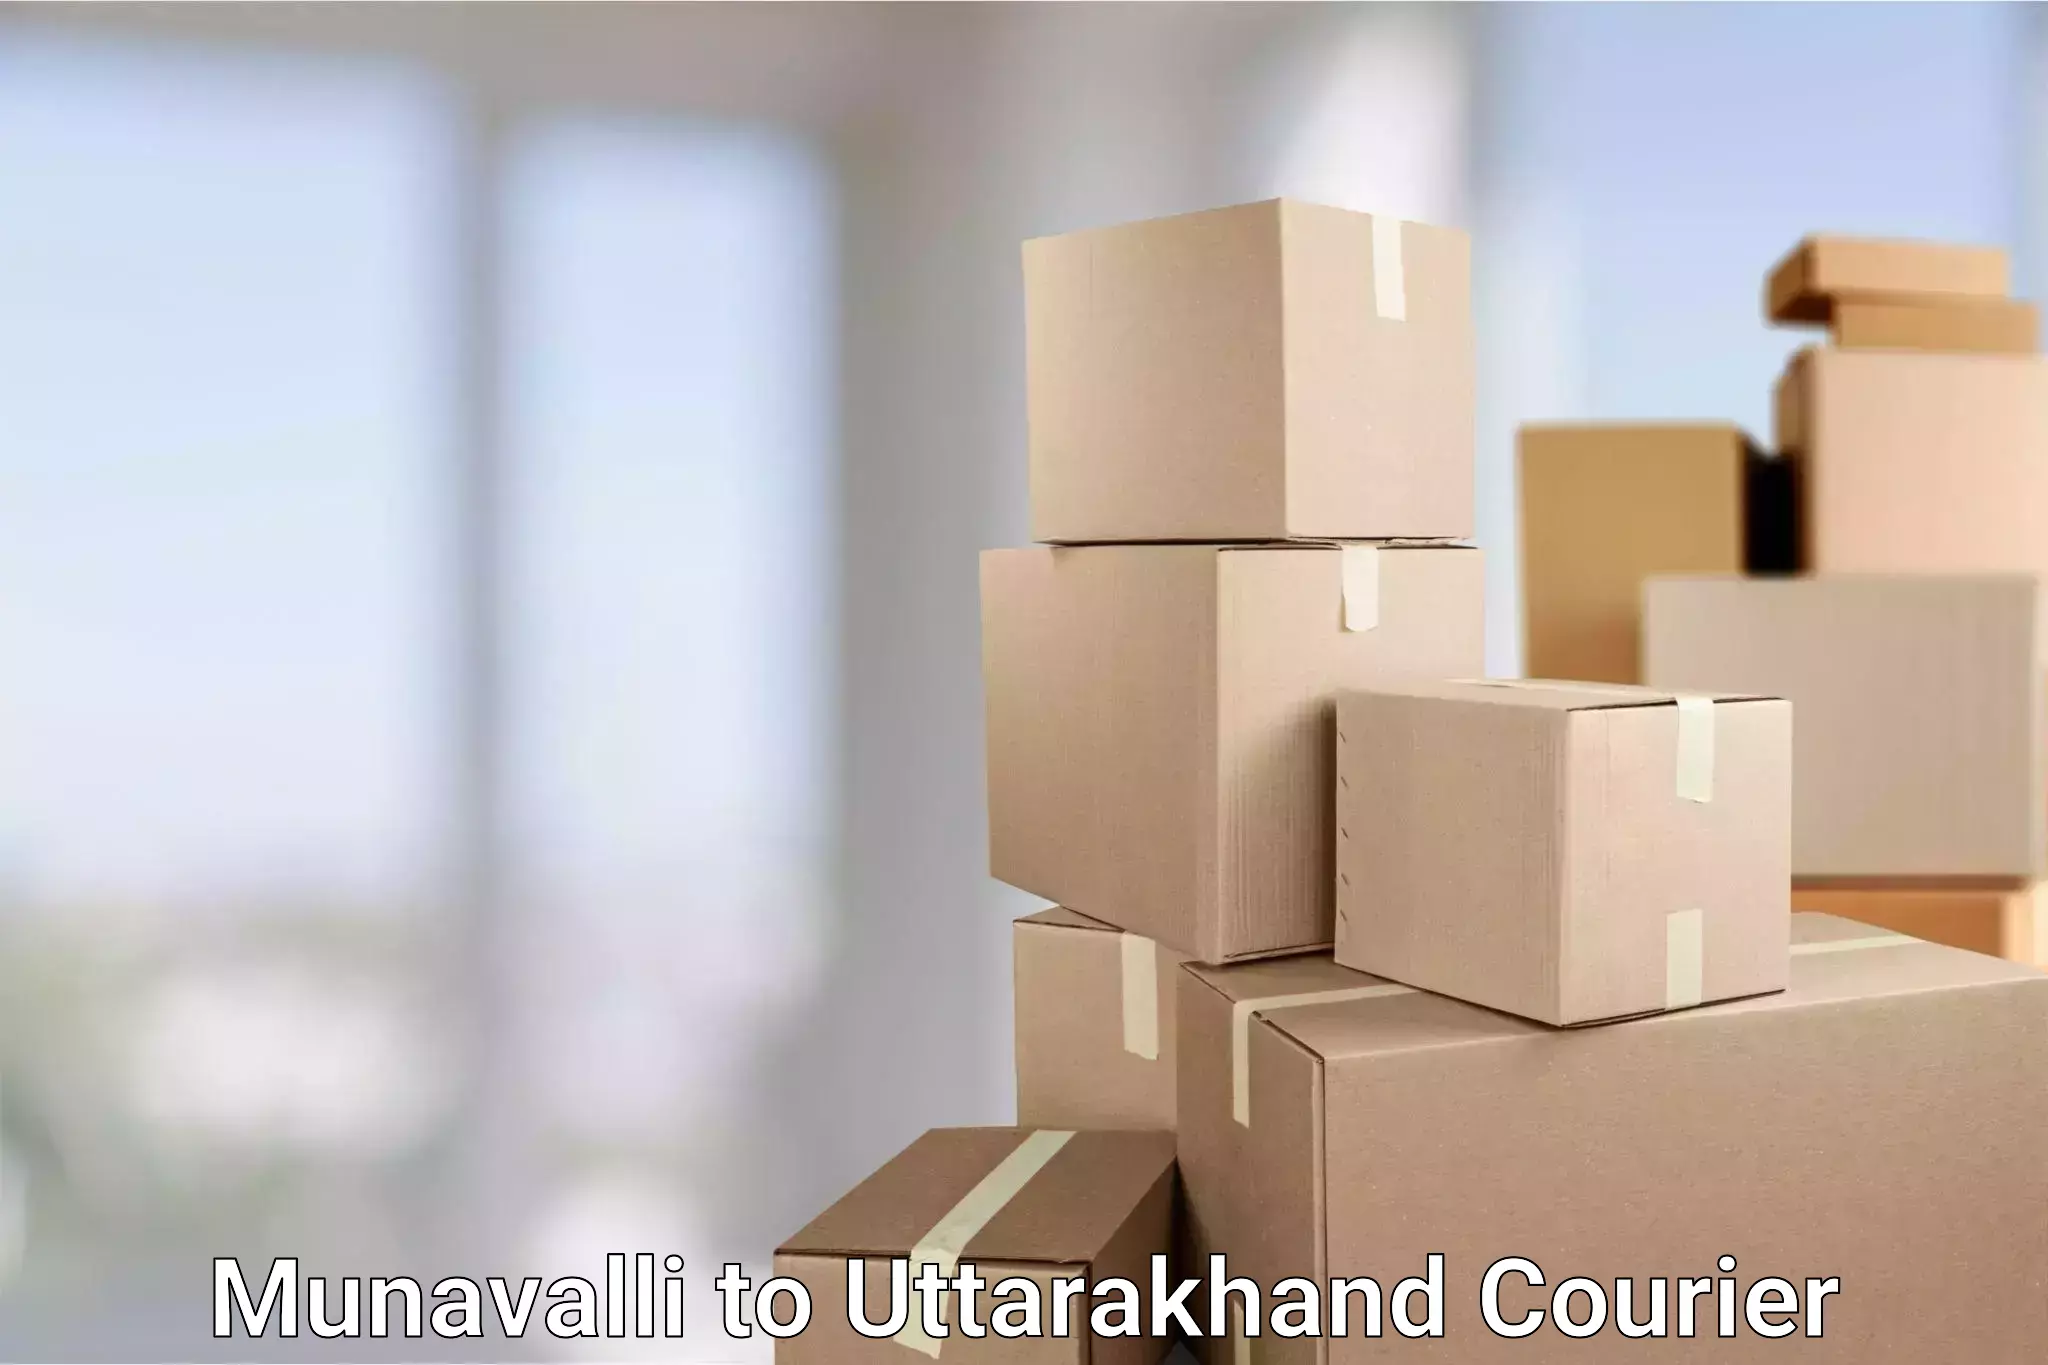 24/7 courier service Munavalli to IIT Roorkee